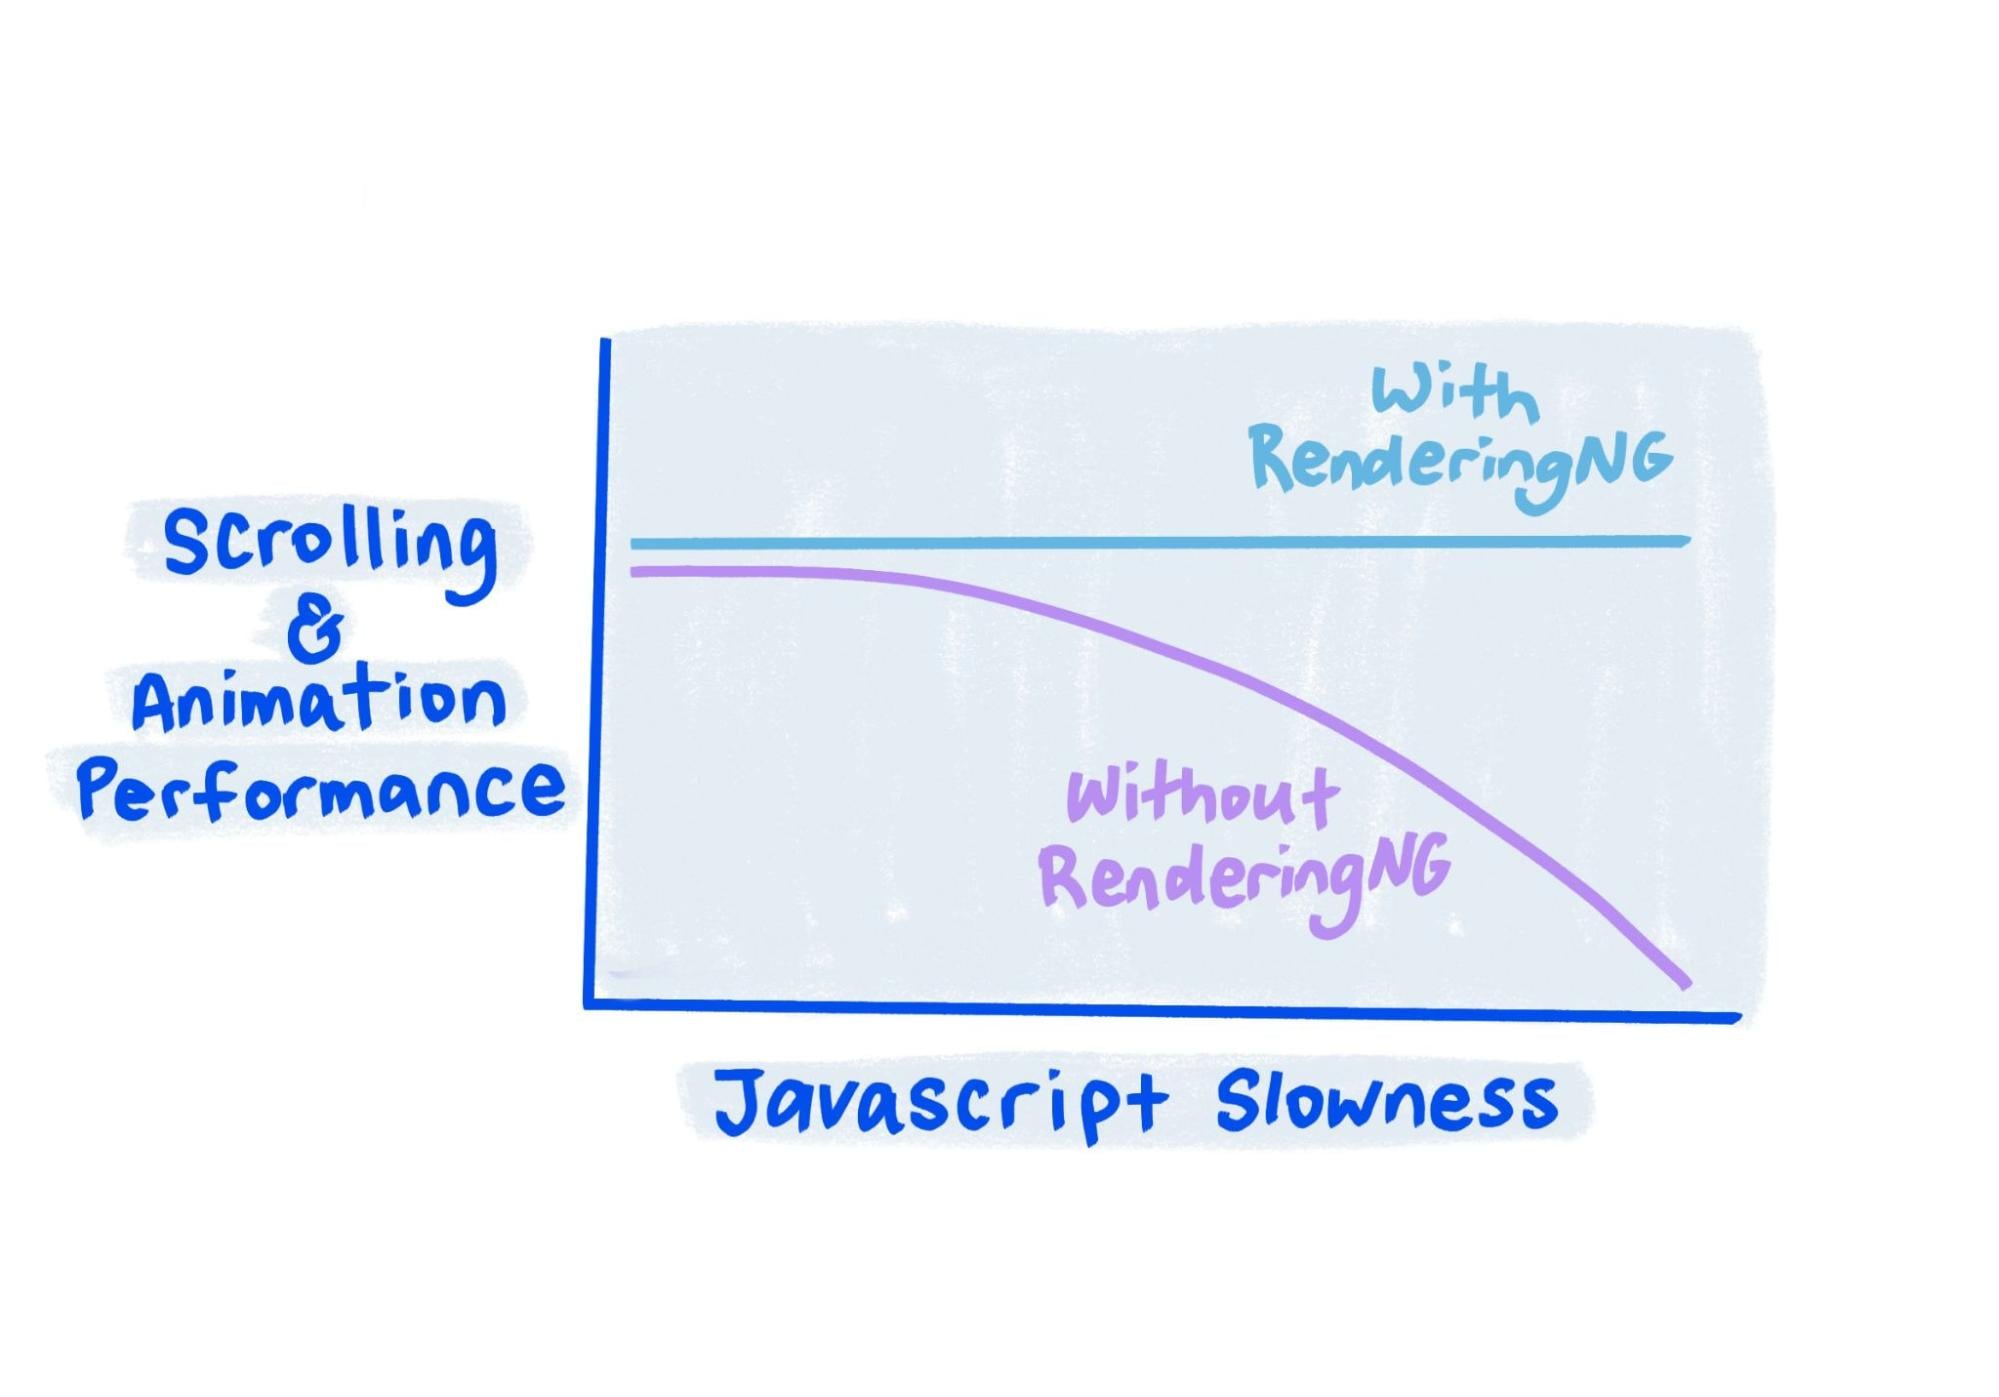 Sketsa menunjukkan bahwa performa RenderingNG tetap solid meskipun JavaScript sangat lambat.